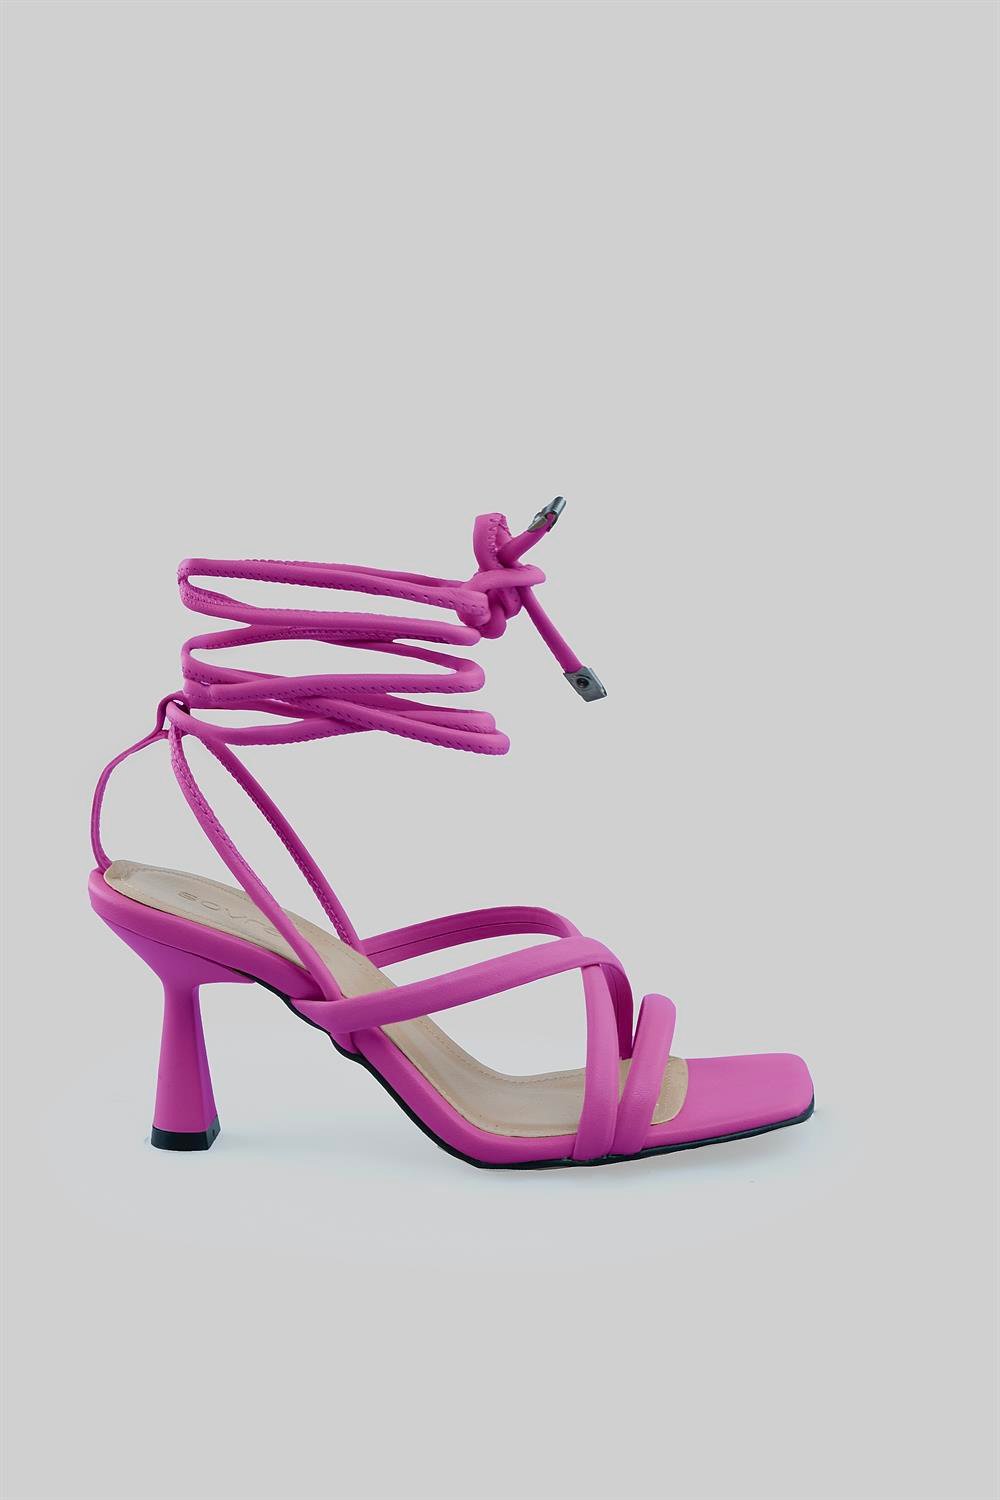 Önü açık çapraz bantlı uzun ipli topuklu ayakkabı Liza Model | SOVRANA